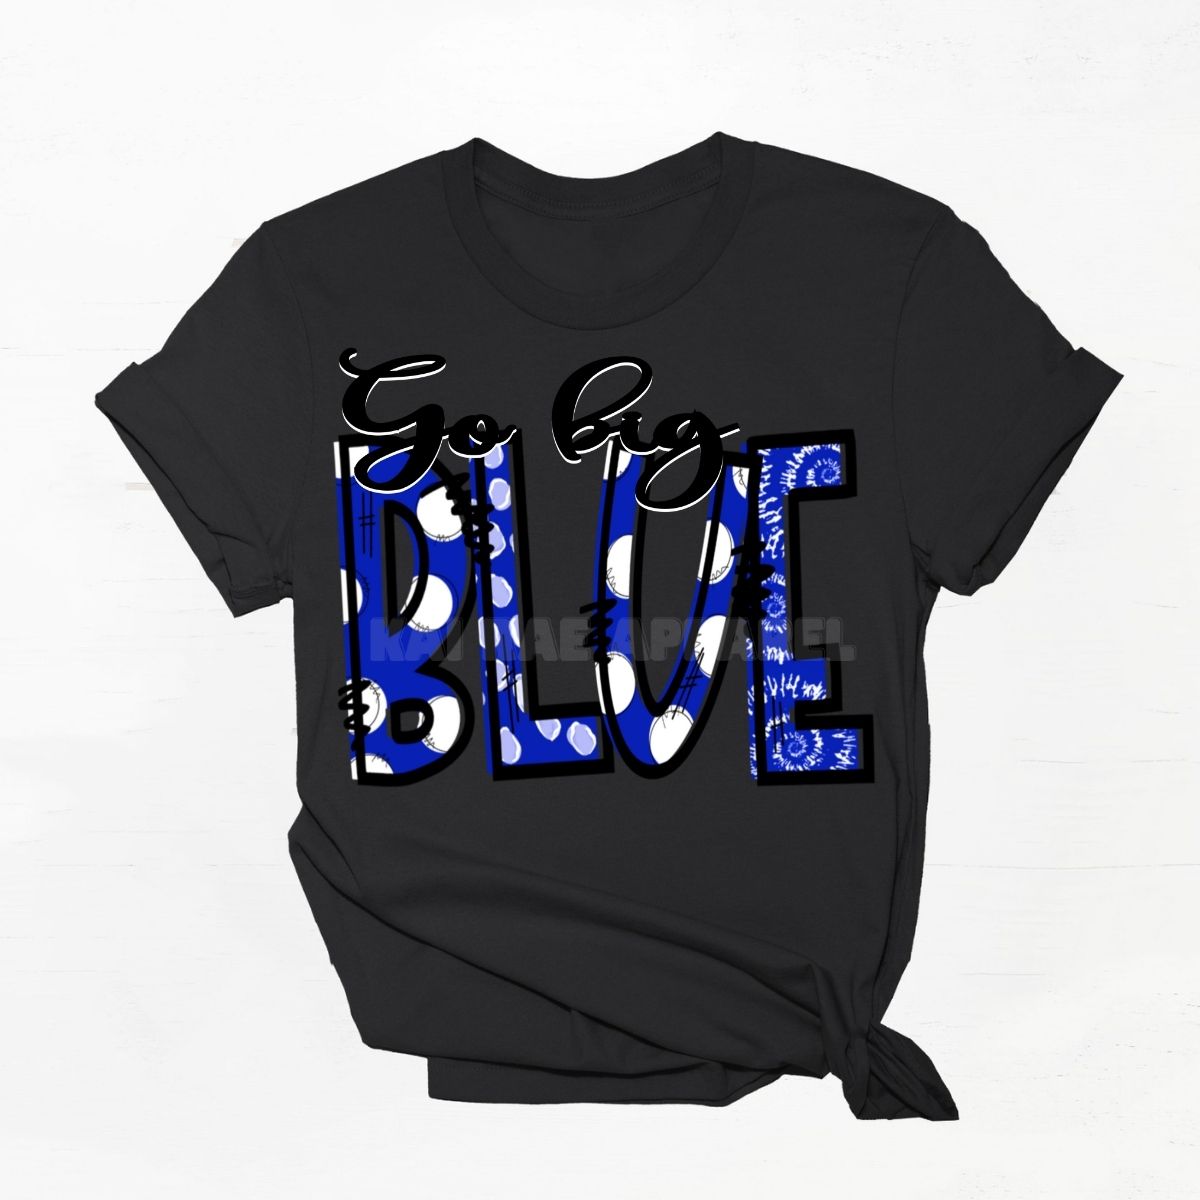 GO BIG BLUE